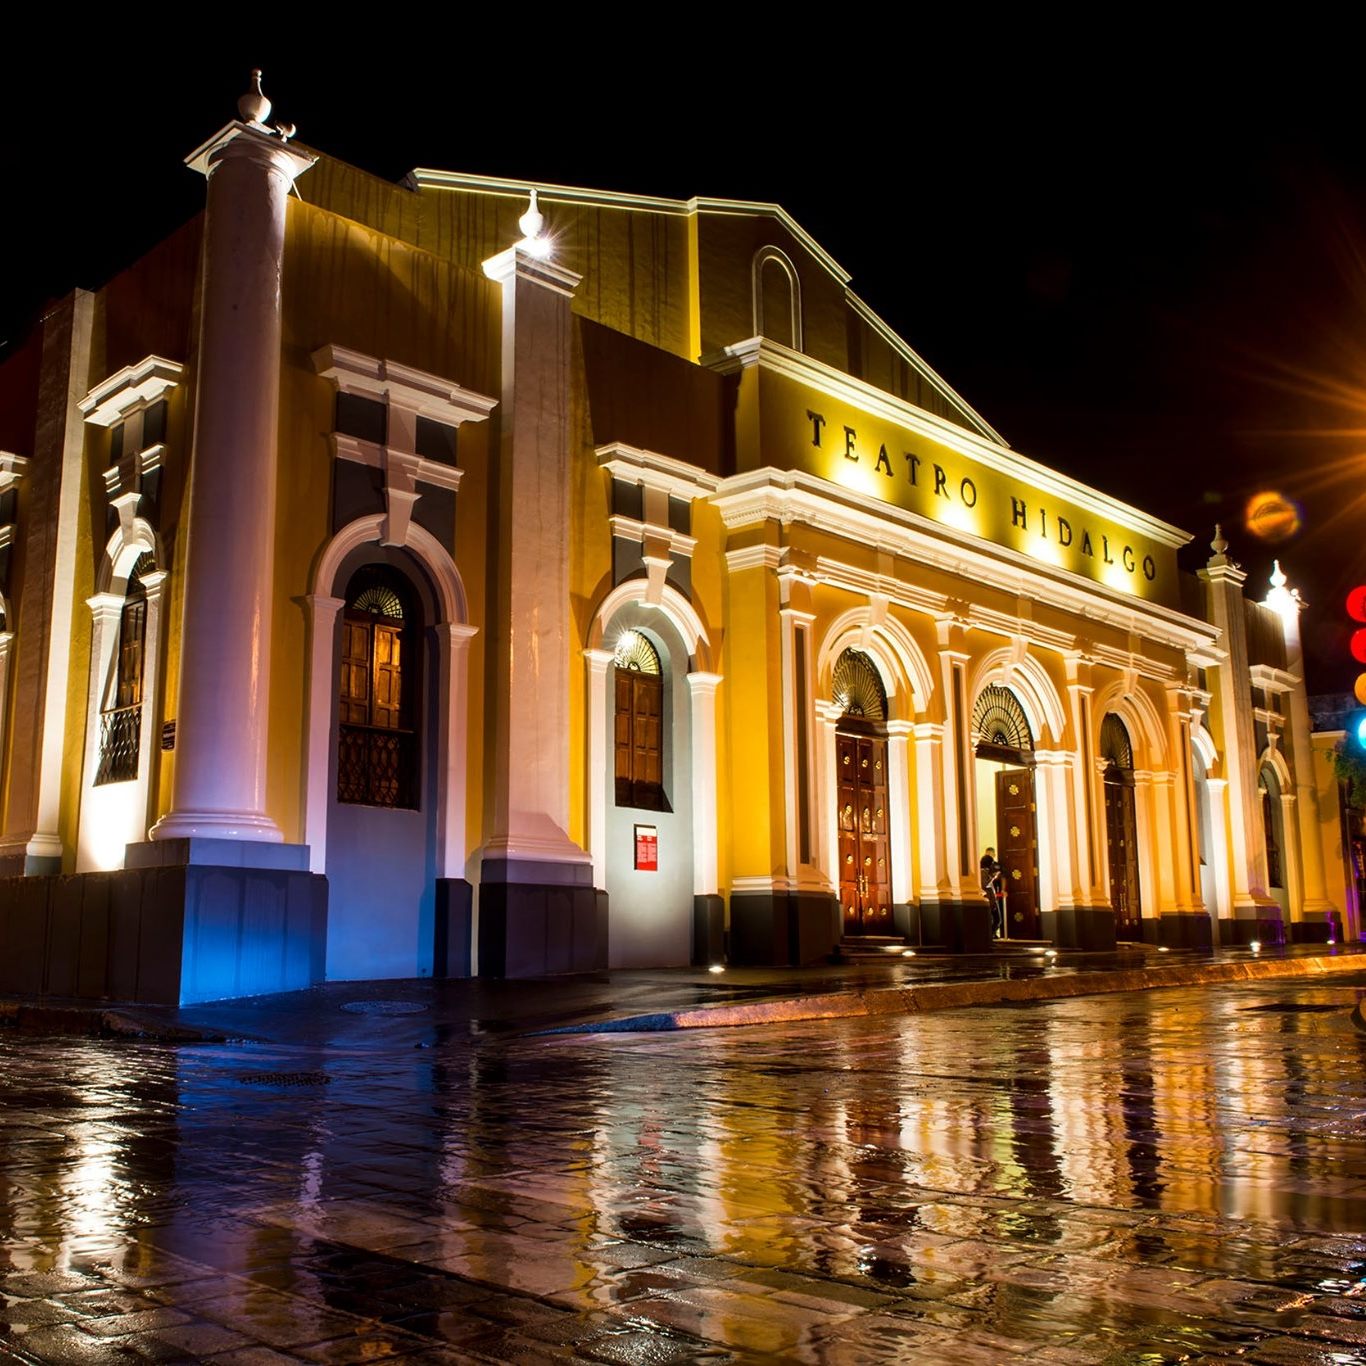 Fachada de Teatro Hidalgo en Colima